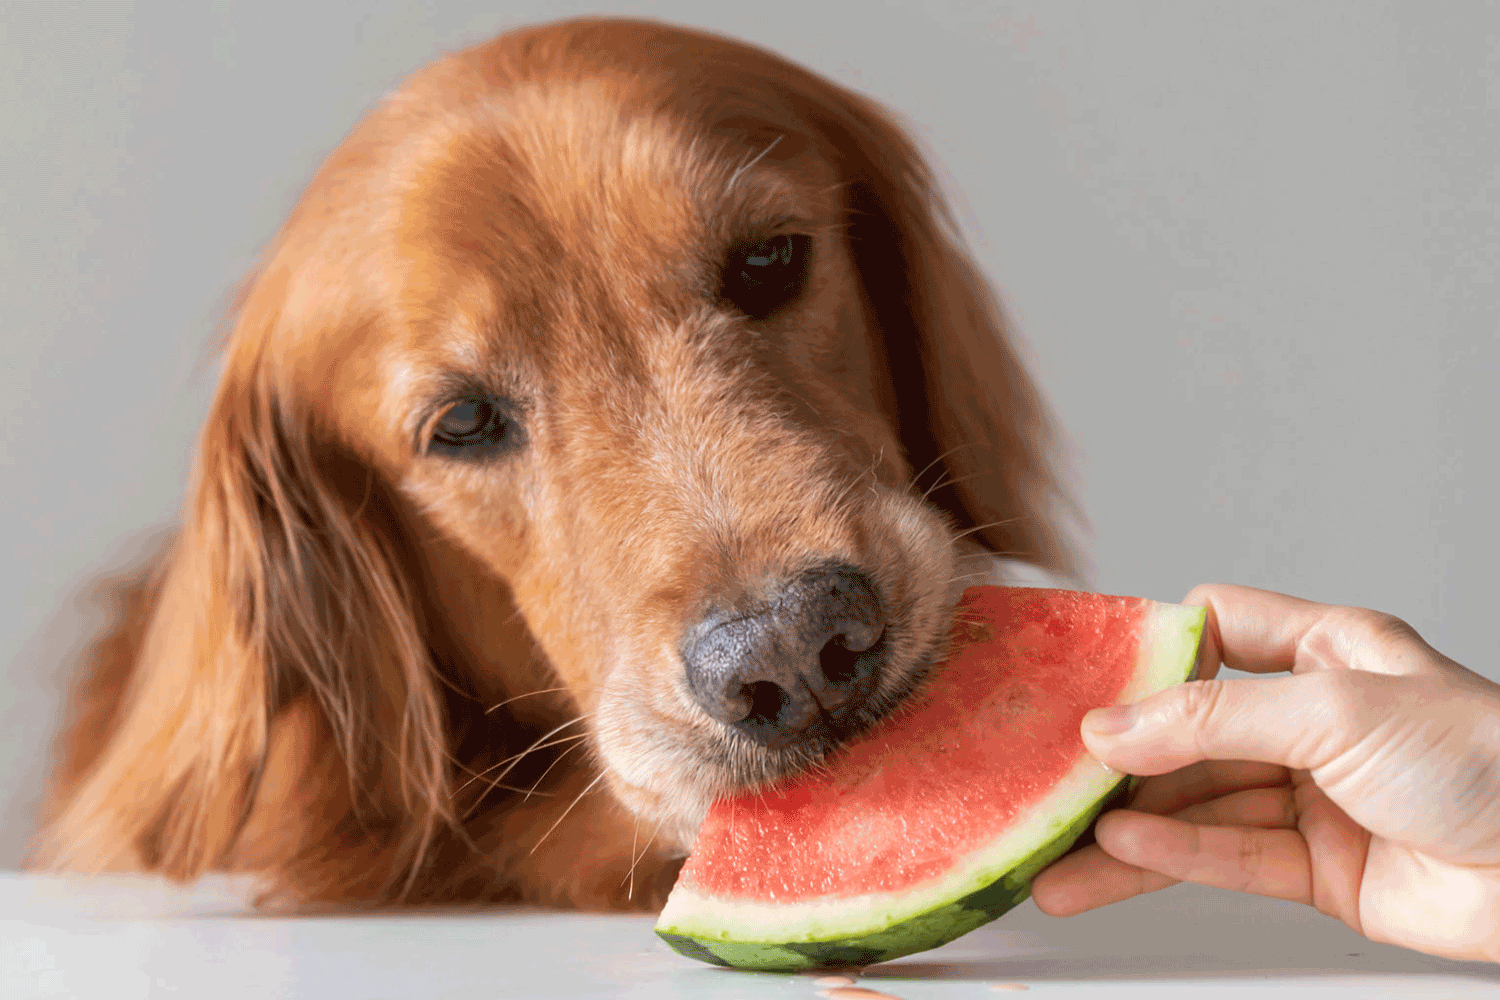 میوه مناسب برای سگ
هندوانه برای سگ